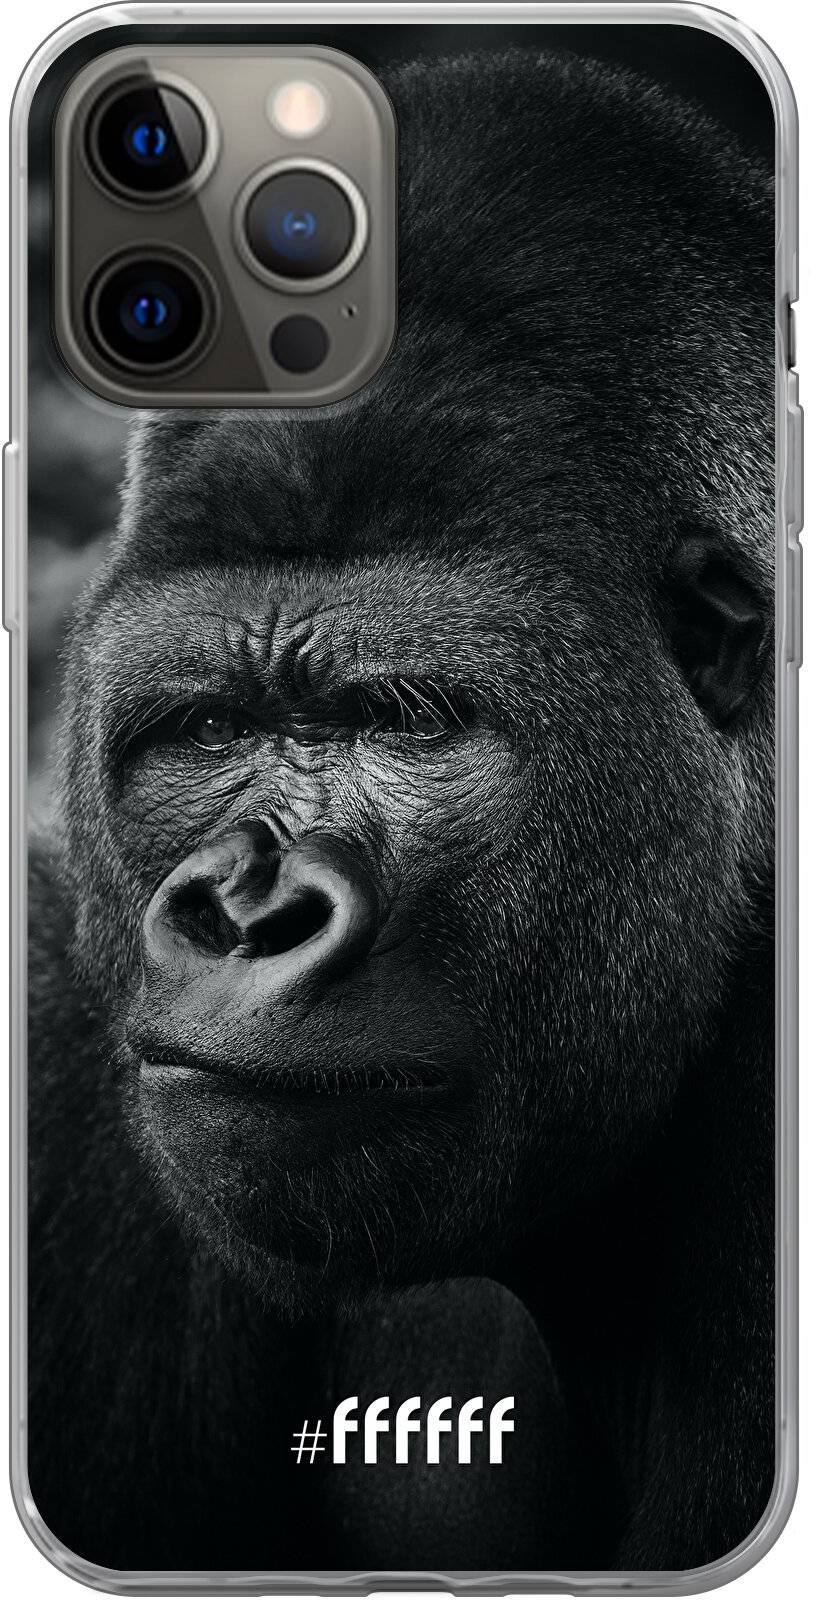 Gorilla iPhone 12 Pro Max